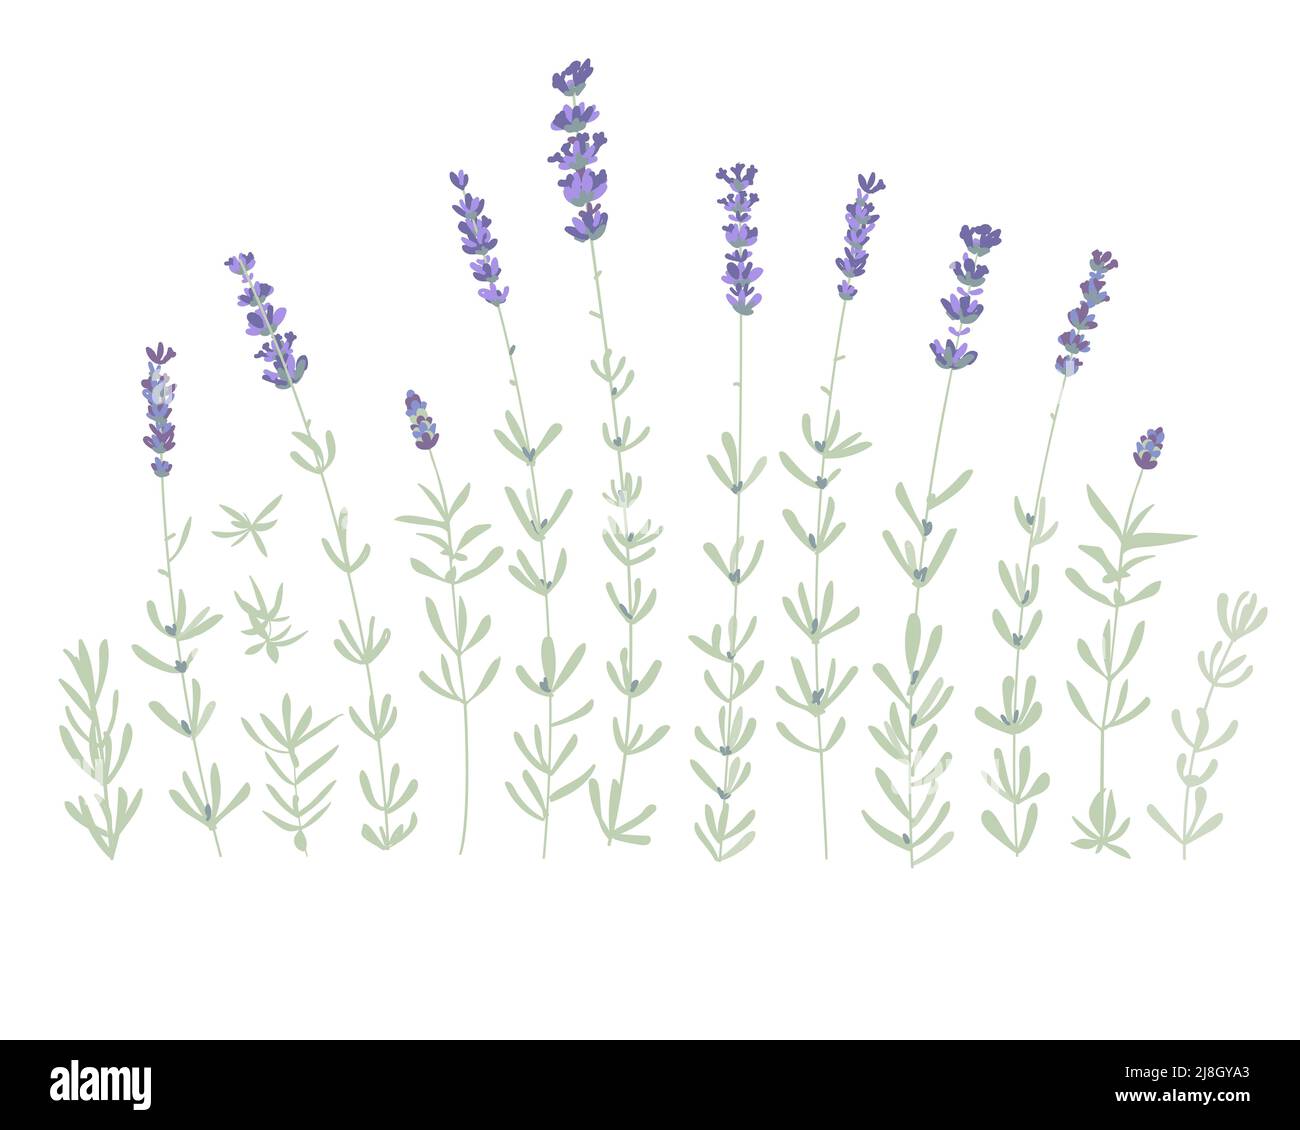 Set aus Lavendelblüten-Elementen. Botanische Abbildung. Sammlung von Lavendelblüten auf weißem Hintergrund. Vektorgrafik-Paket. Stock Vektor